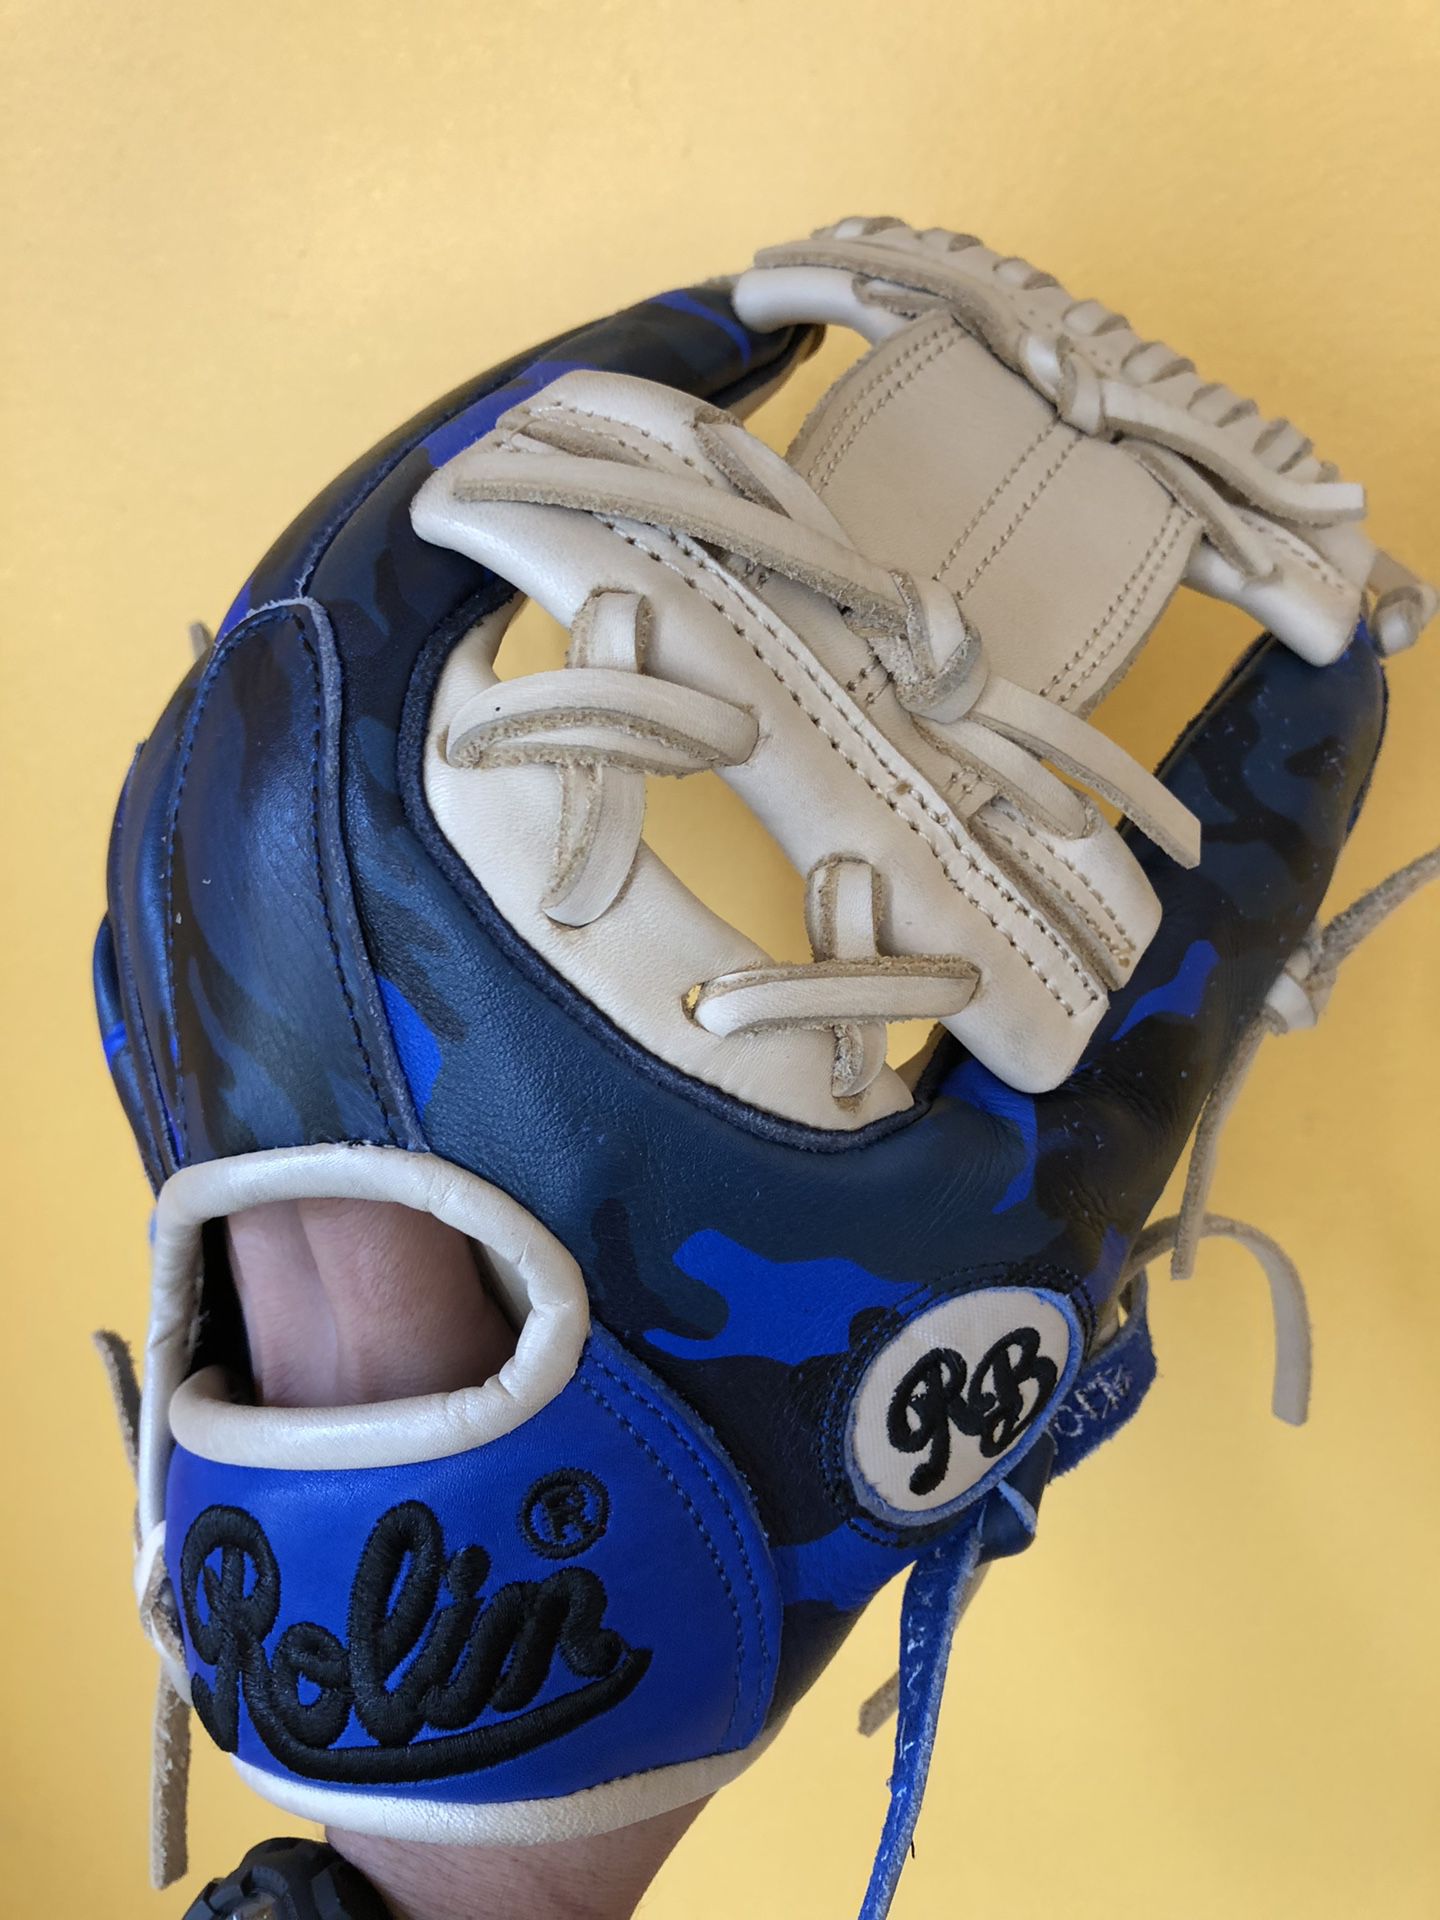 Rolin Pro baseball glove new condition béisbol equipment bats